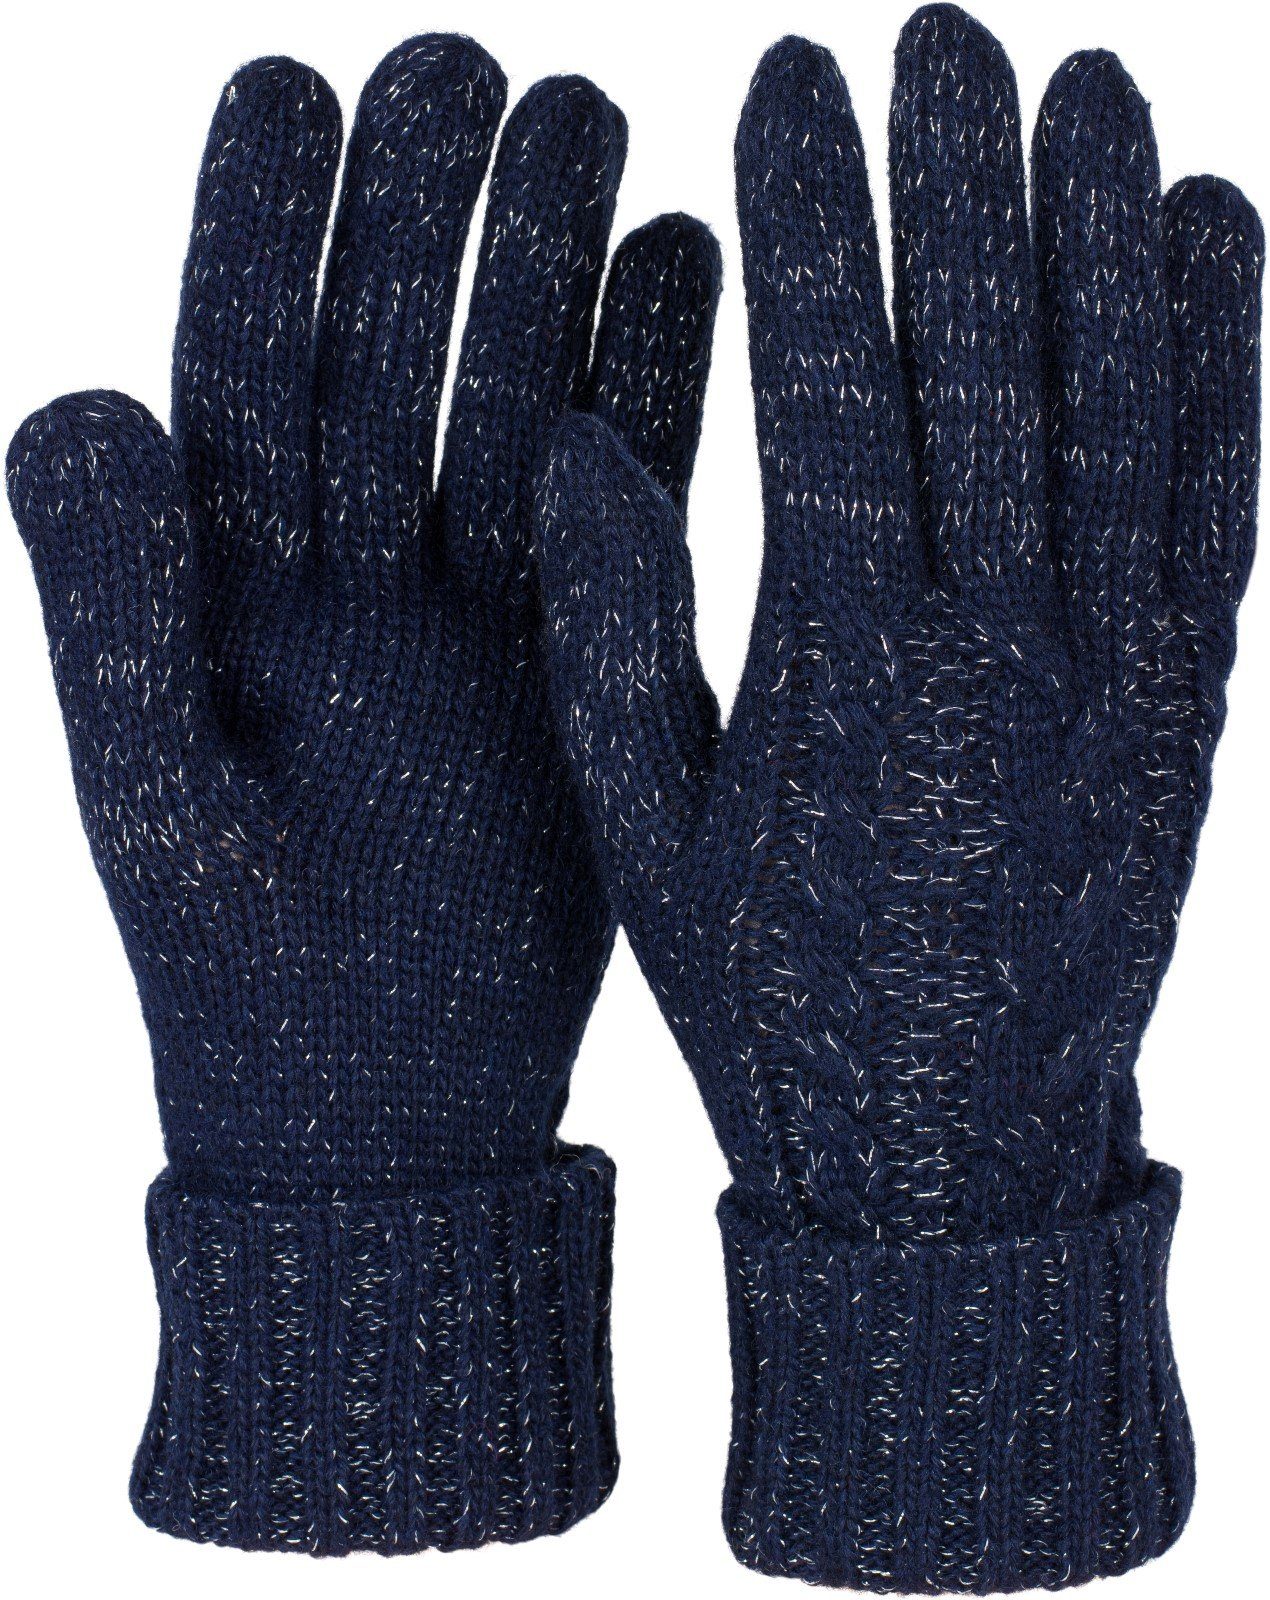 styleBREAKER Strickhandschuhe Strick Handschuhe mit Zopfmuster und Metallic Faden Dunkelblau